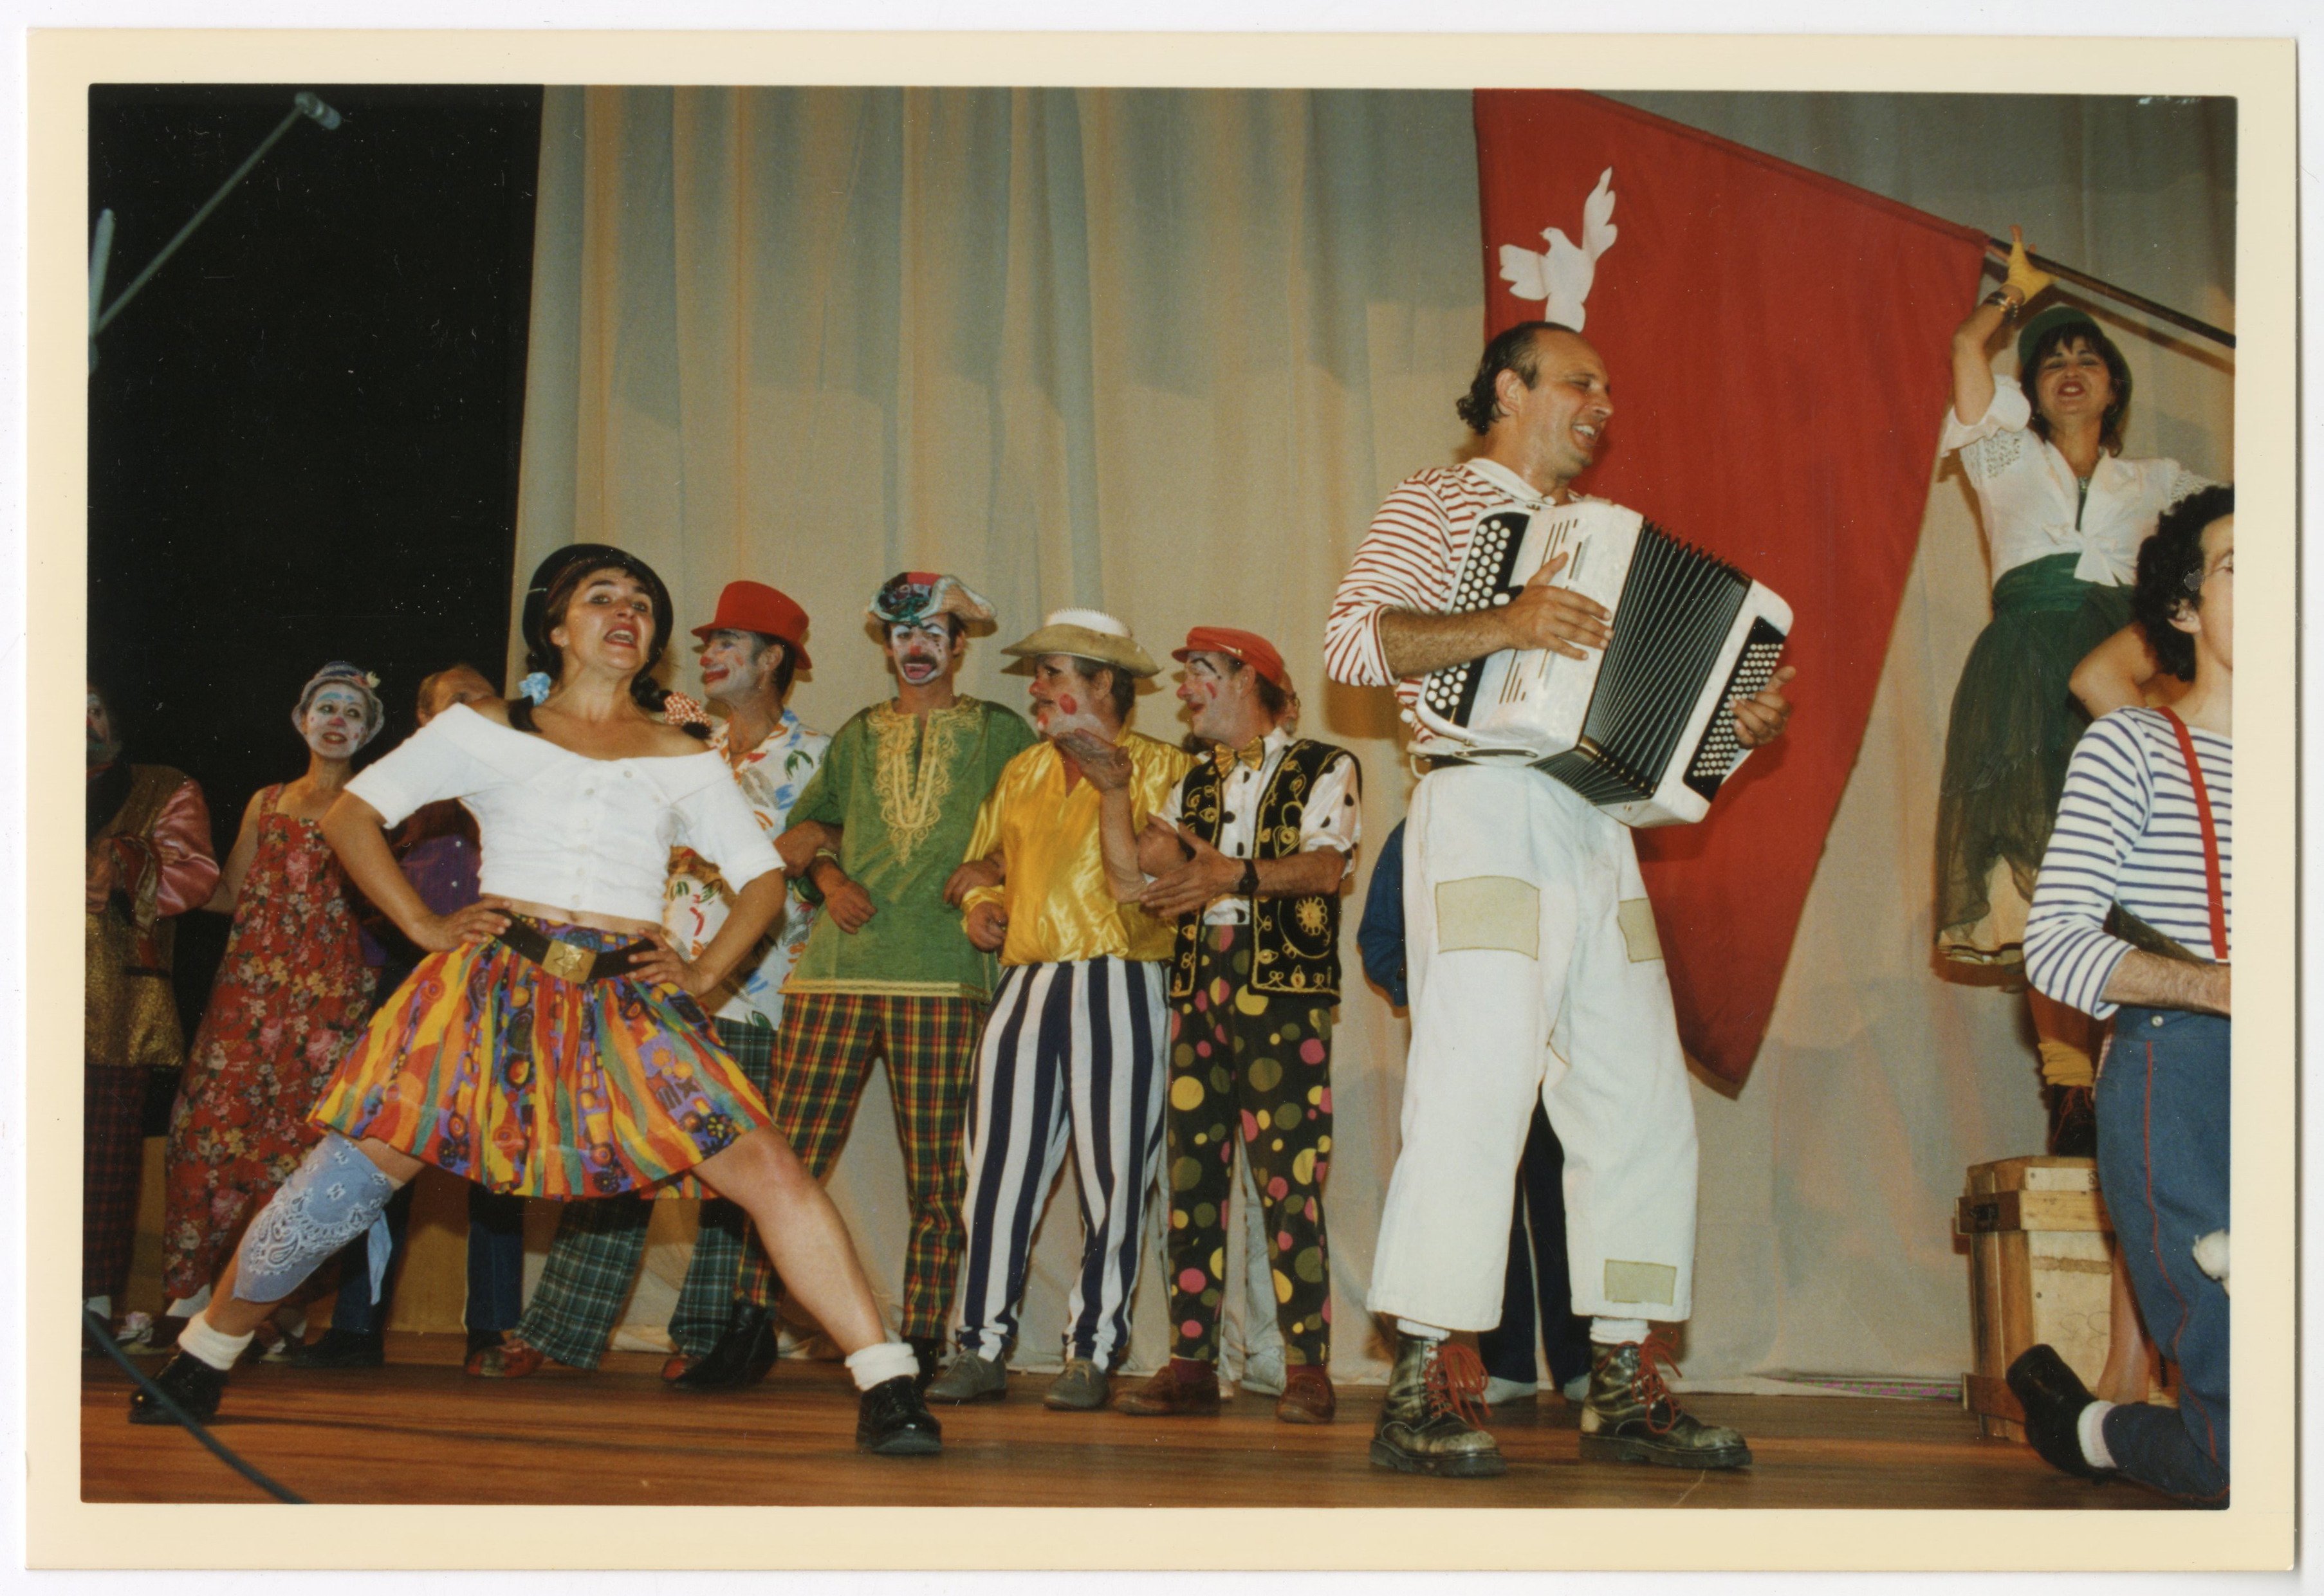 Photographie de membres d'Emmaüs pendant leurs représentations sur scène lors de l'assemblée de 1996 à Paris (France).